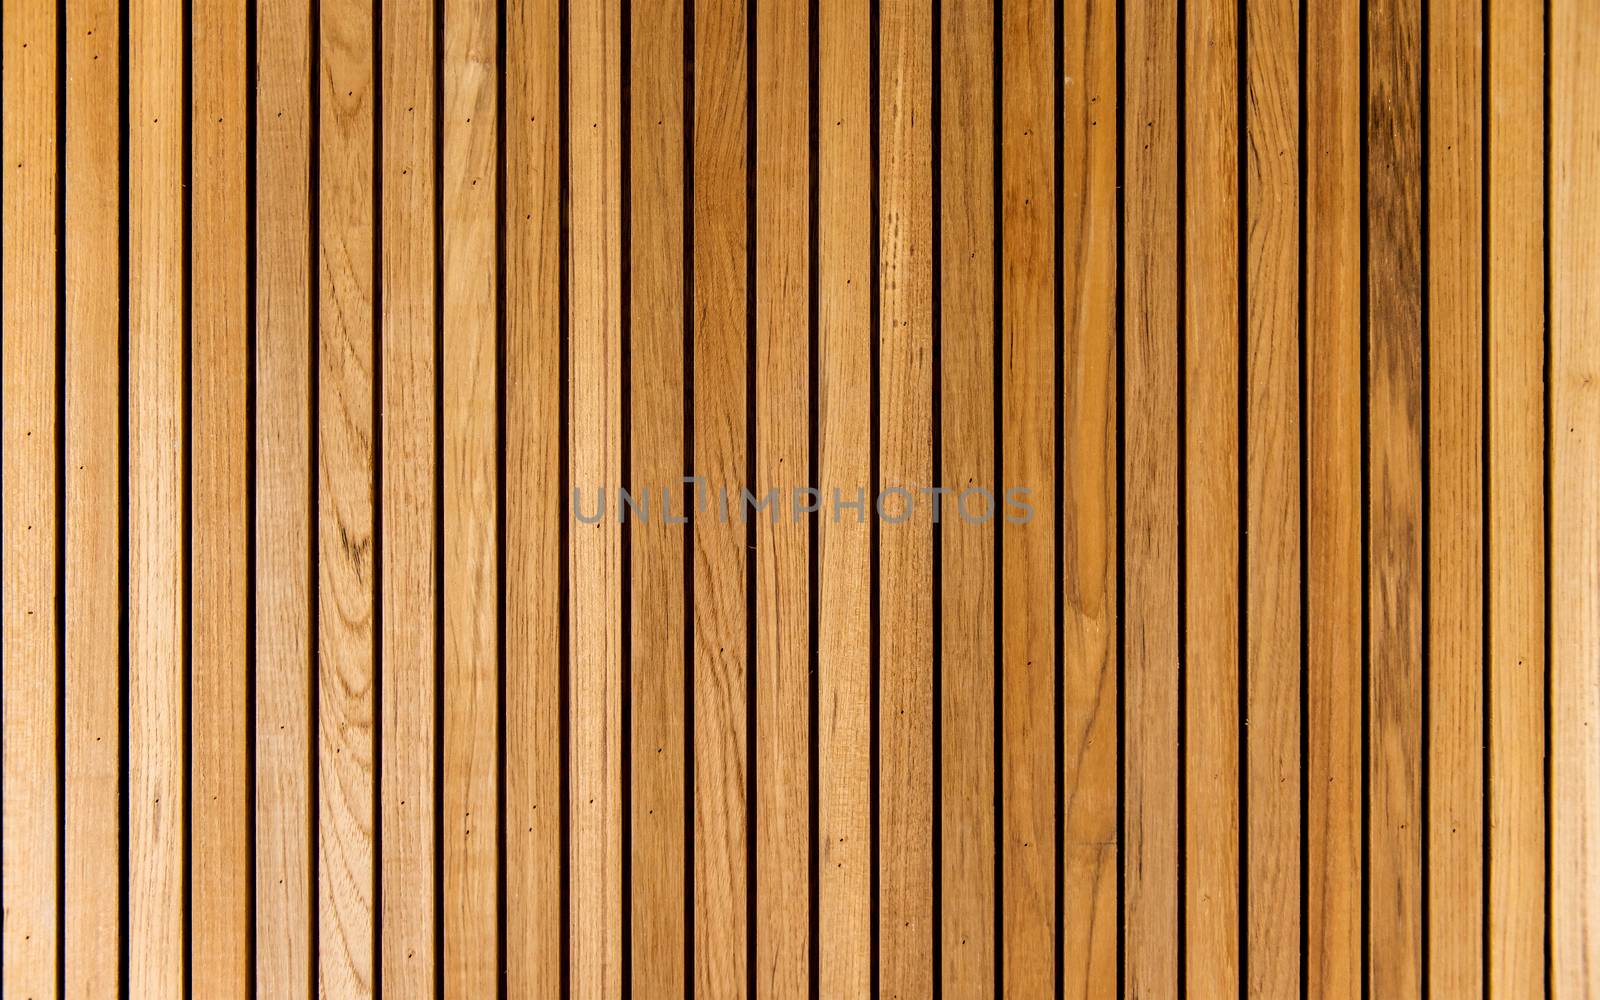 stripe lath brown wood pattern wall by antpkr